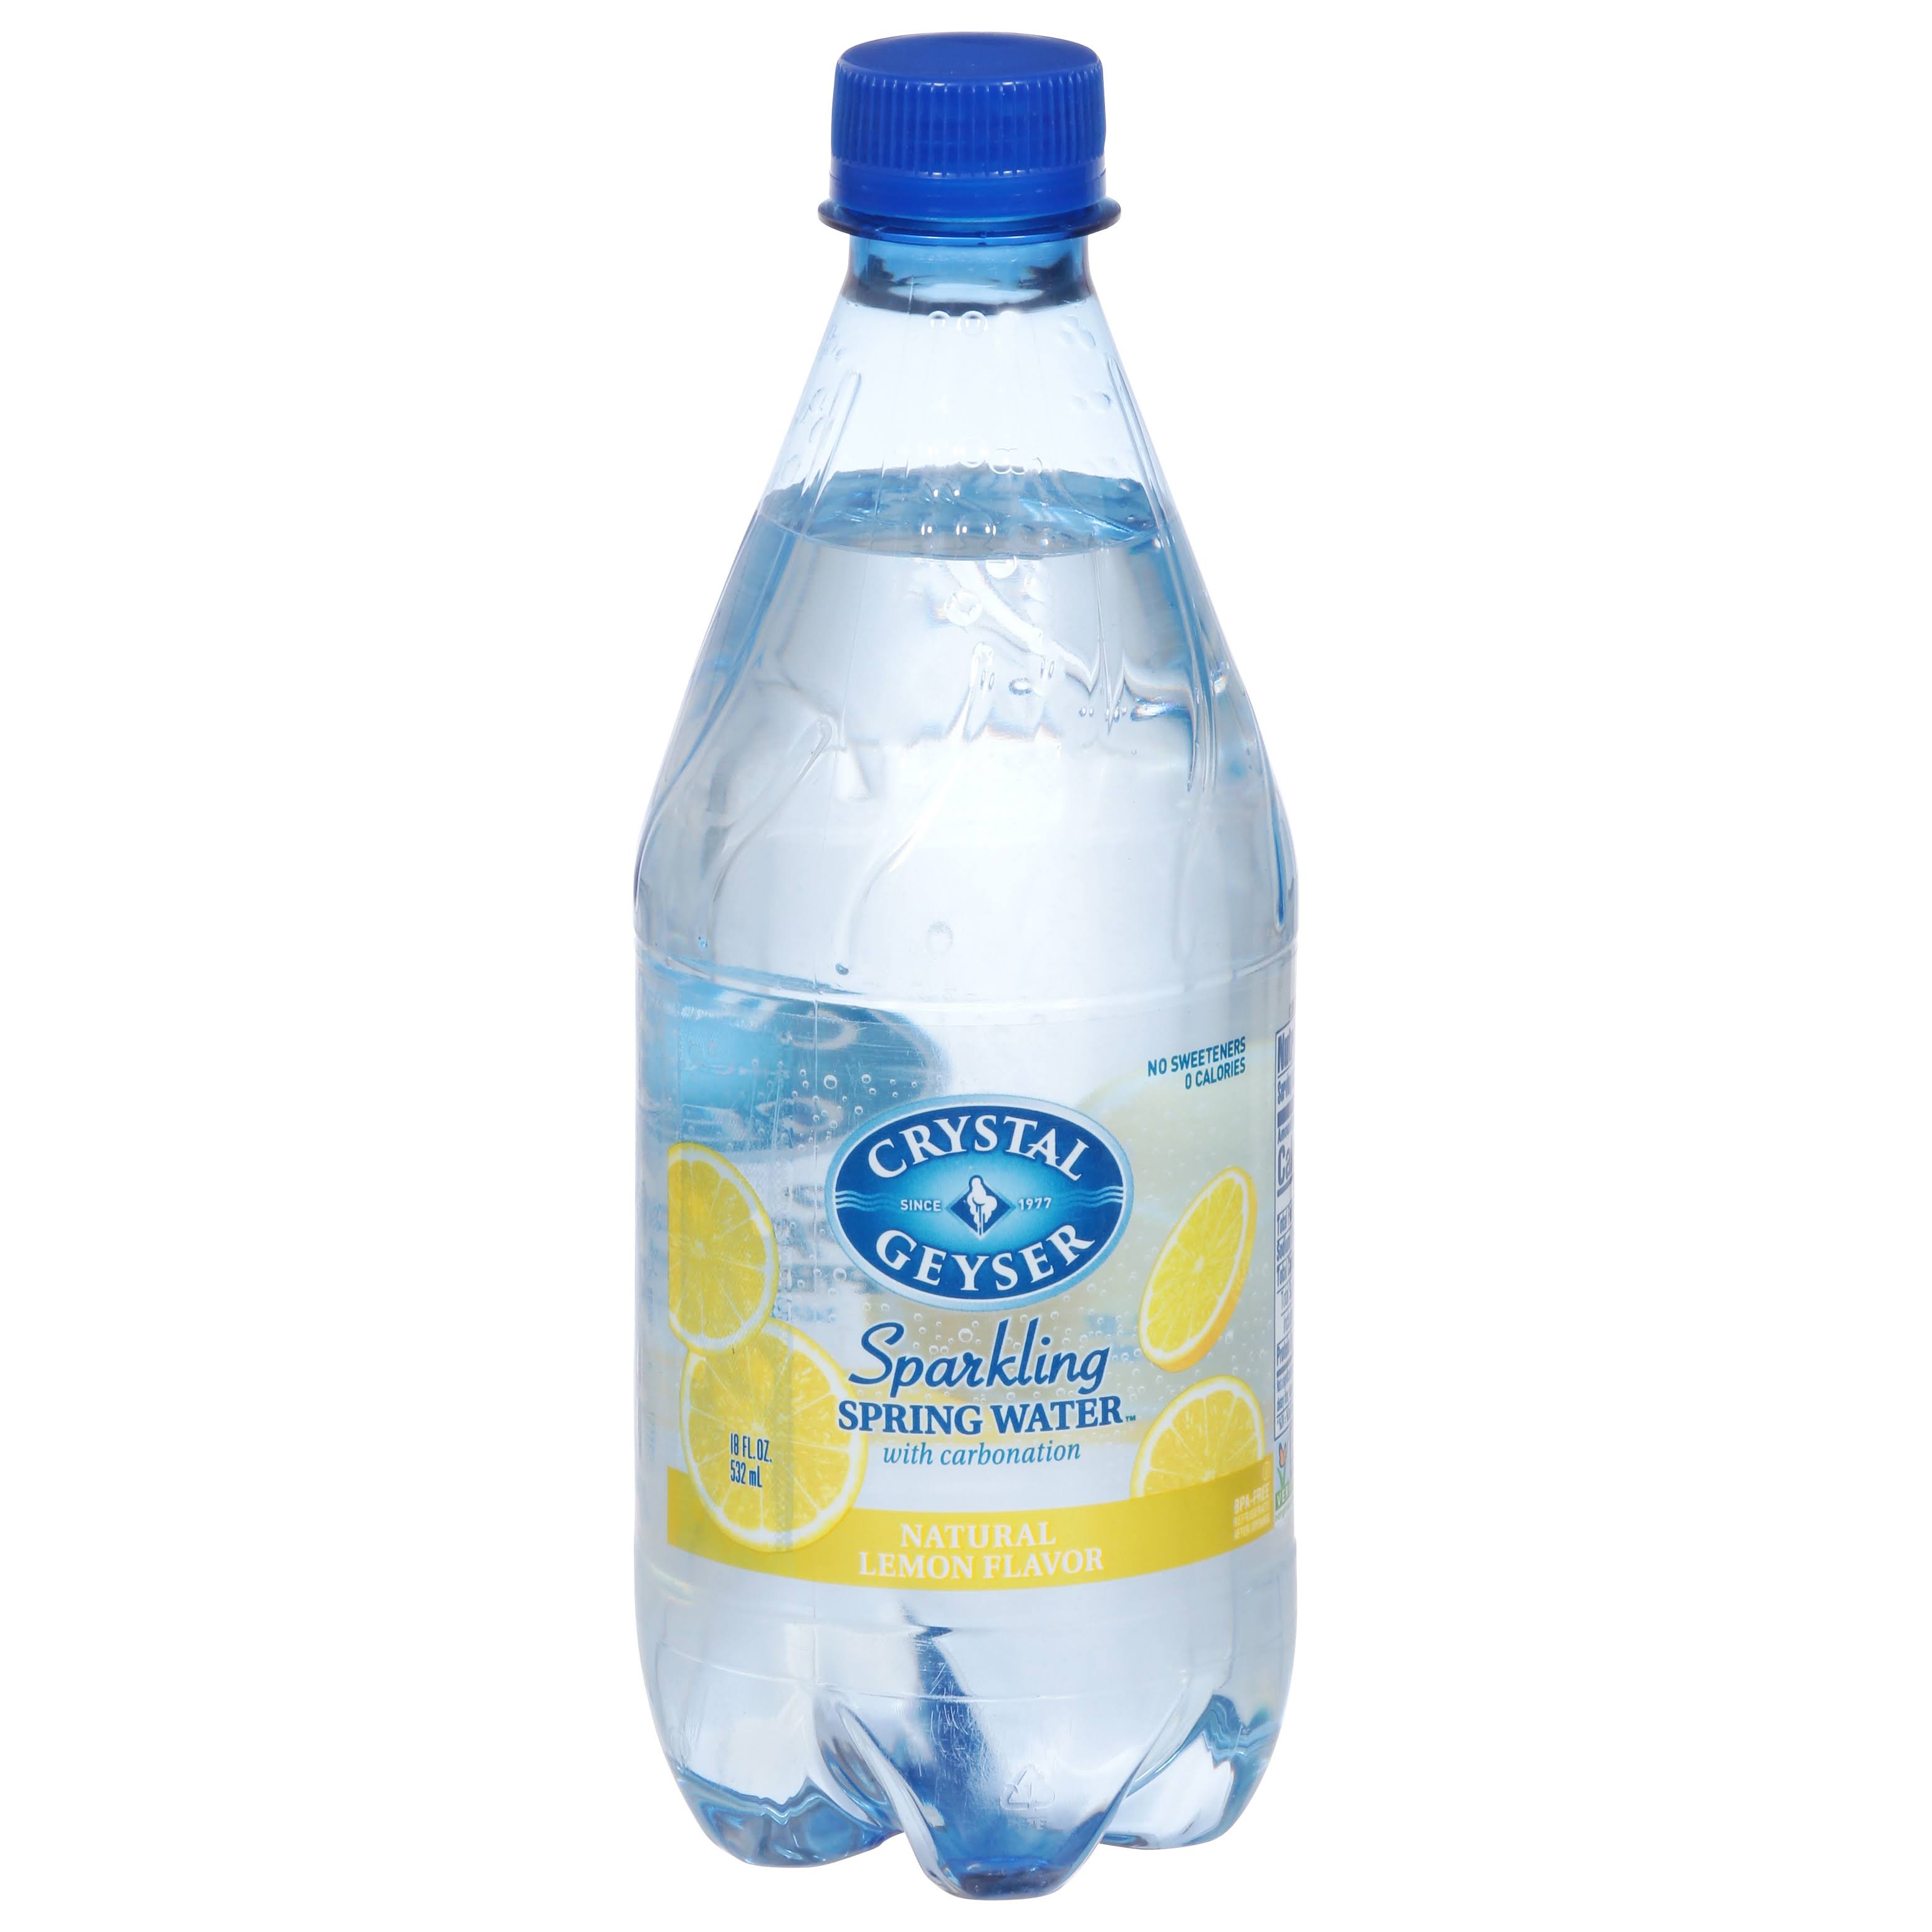 Crystal Geyser Sparkling Mineral Water - Natural Lemon Flavor